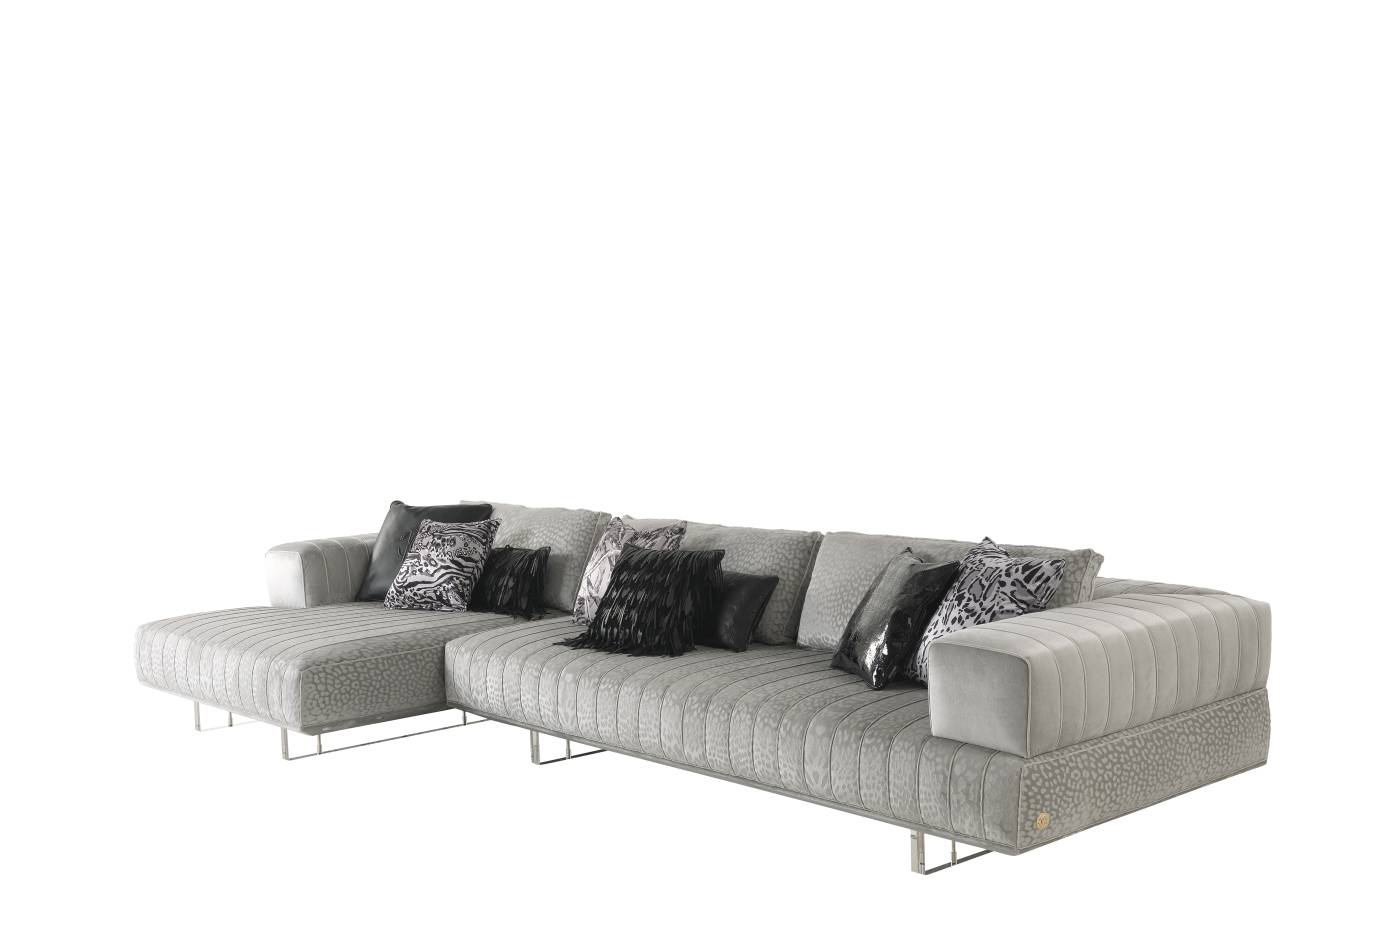 RCHI_ARUBA_modular-sofa_composition-A_2021_03.jpg